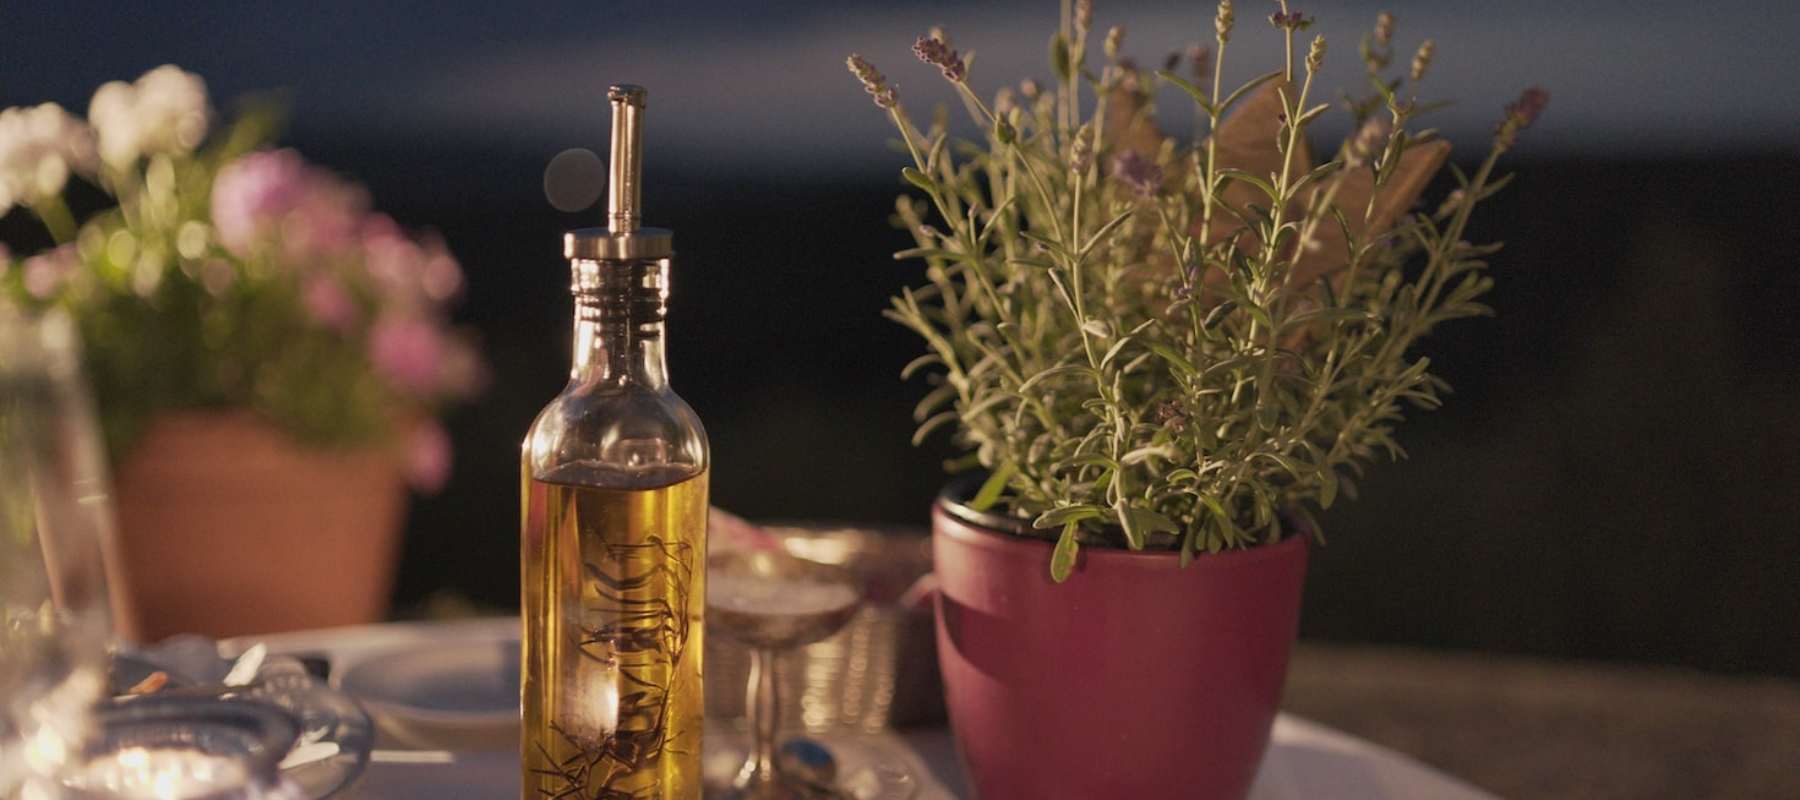 Muss Olivenöl aus zerdellten Blechkanistern umgefüllt werden